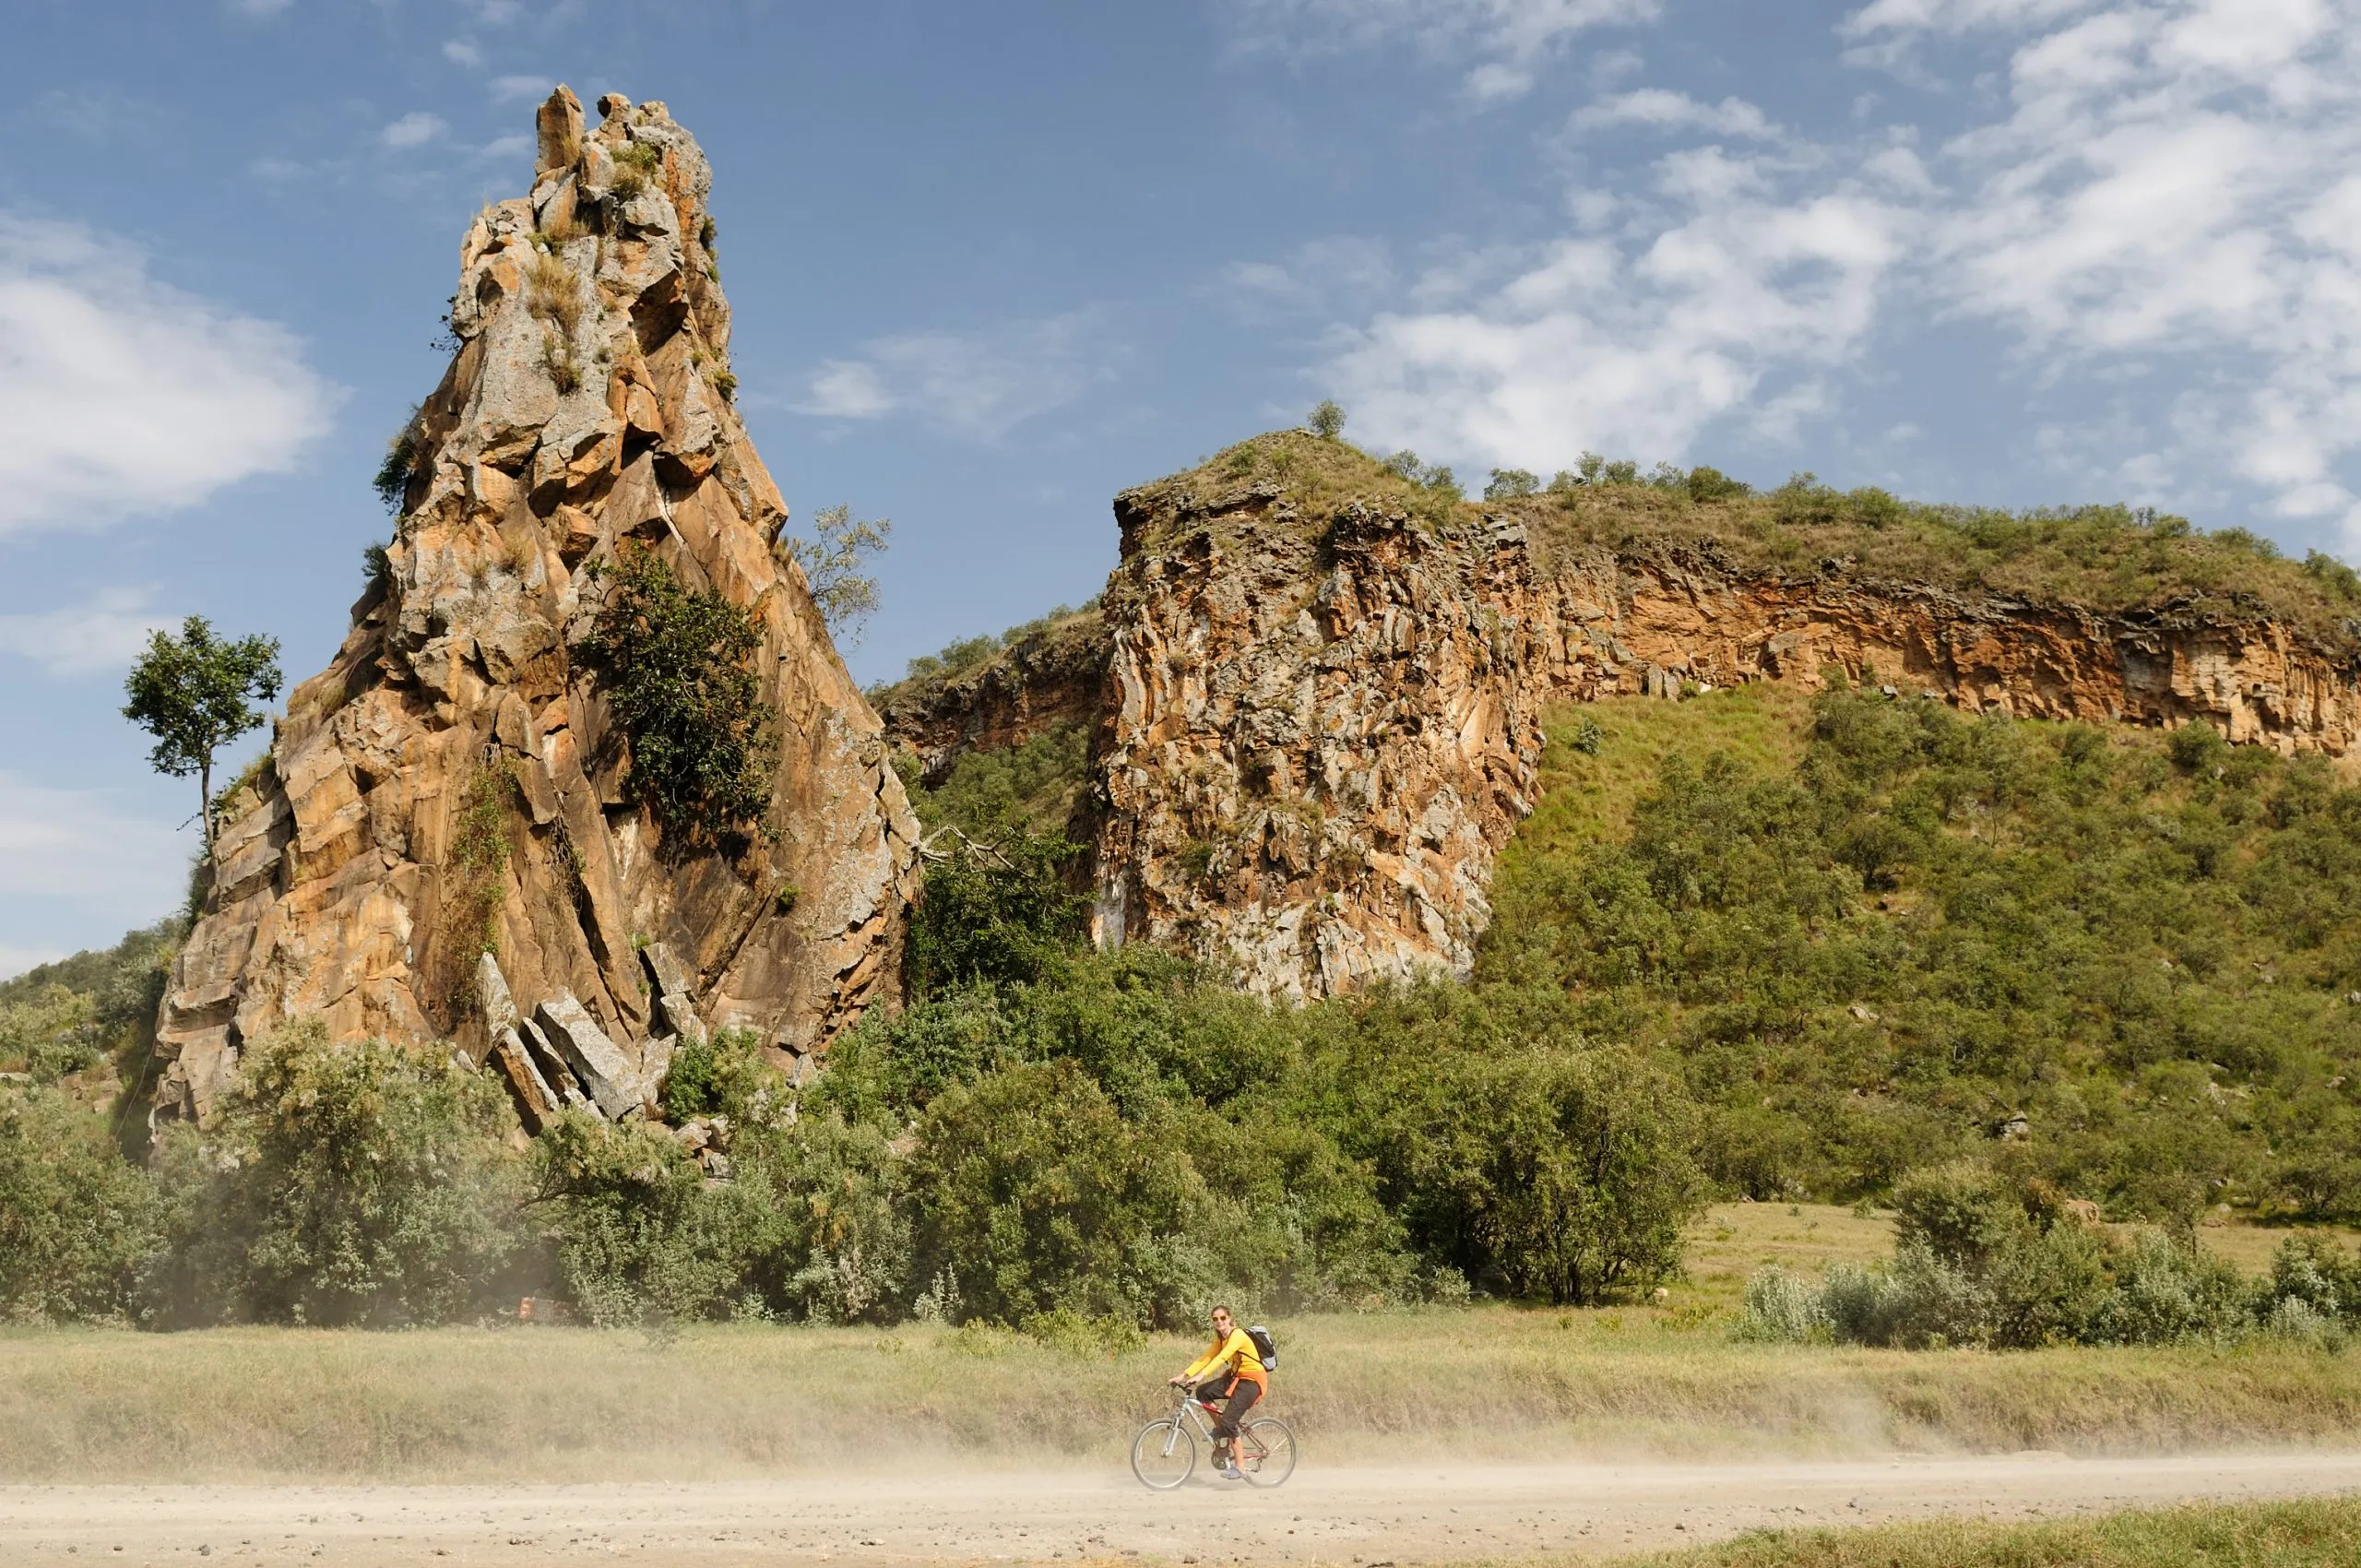 Turisten cyklar vid foten av Stark-klipporna i nationalparken Hells Gate i Kenya